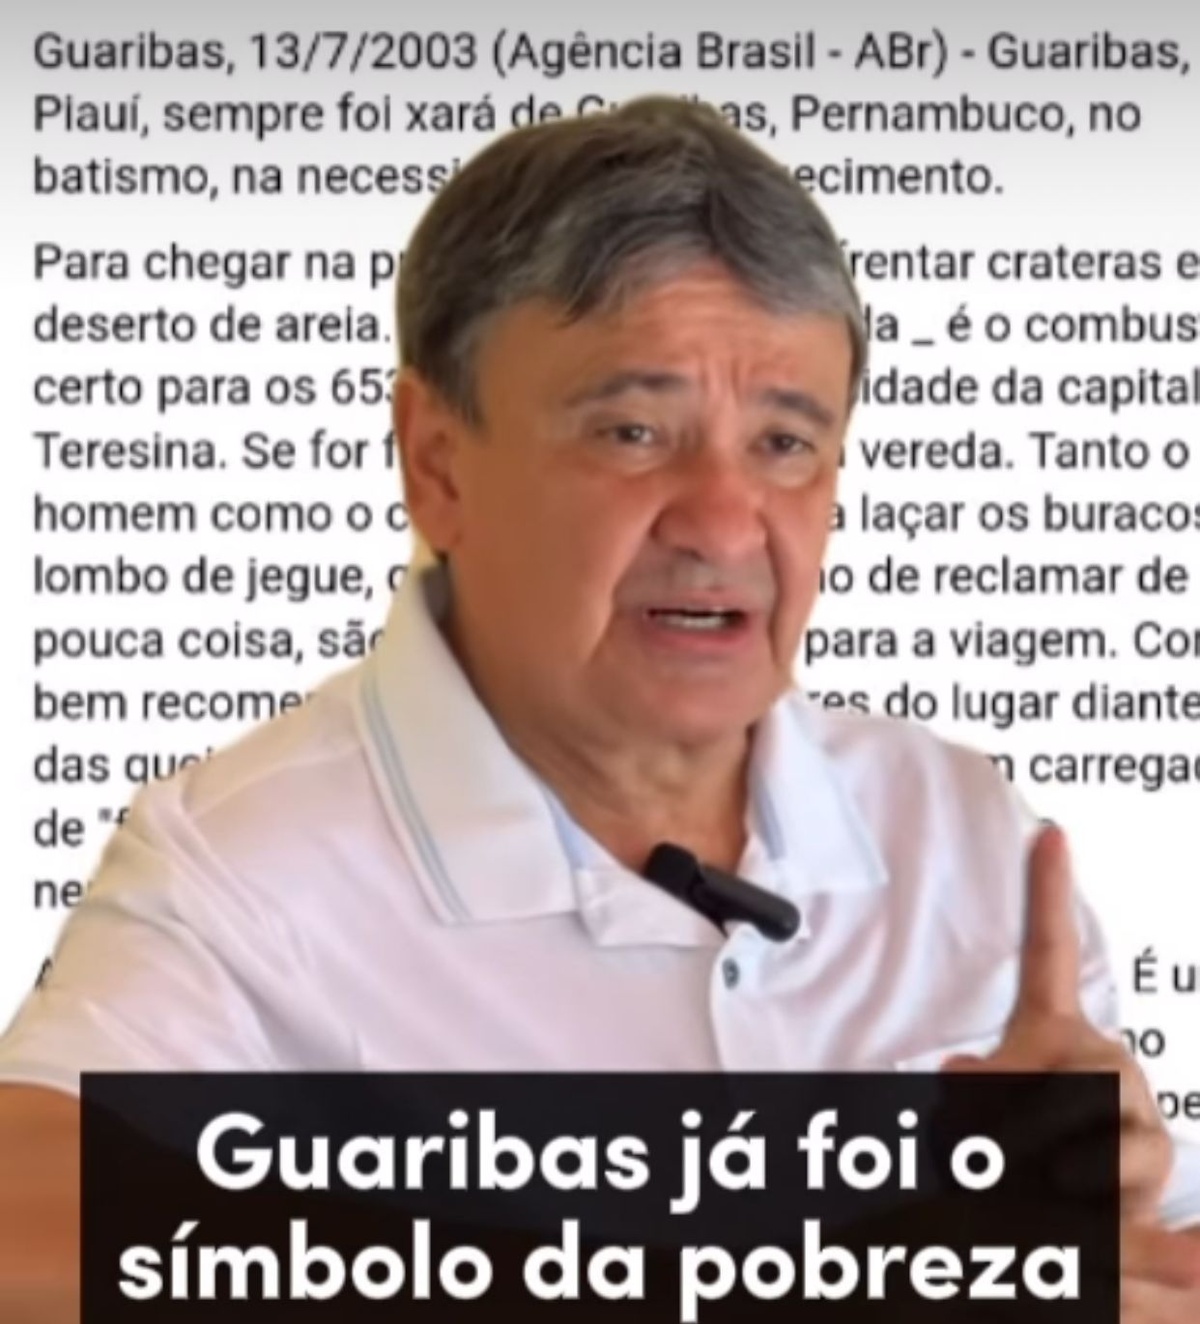 Wellington Dias distorce os fatos sobre a cidade de Guaribas